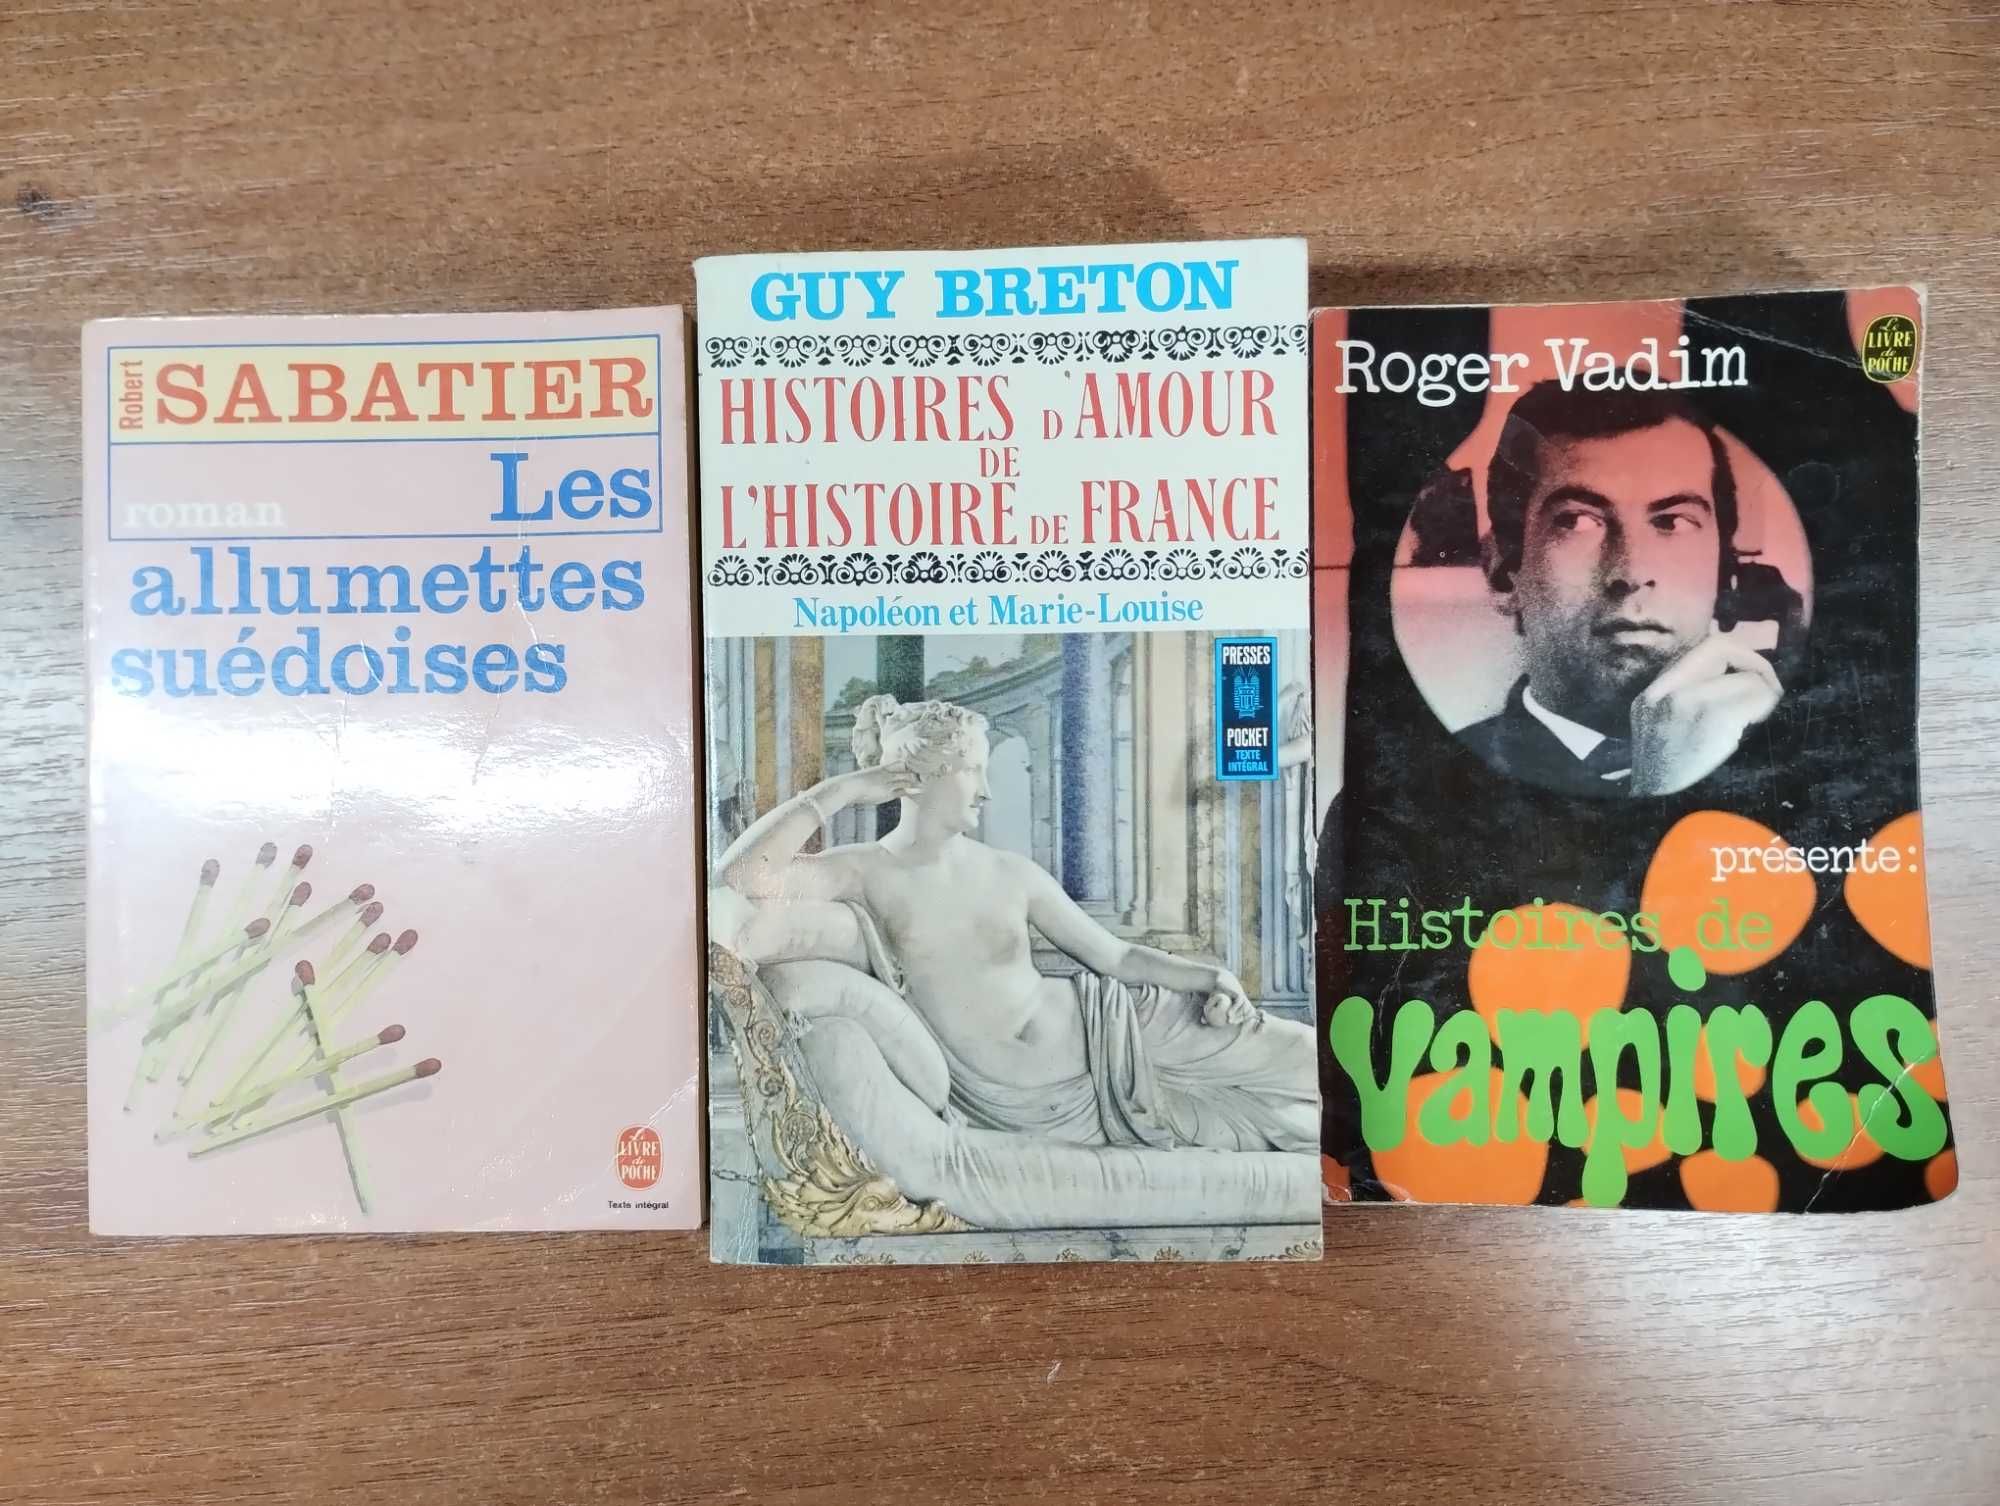 Художественные книги на французском языке для чтения, классика